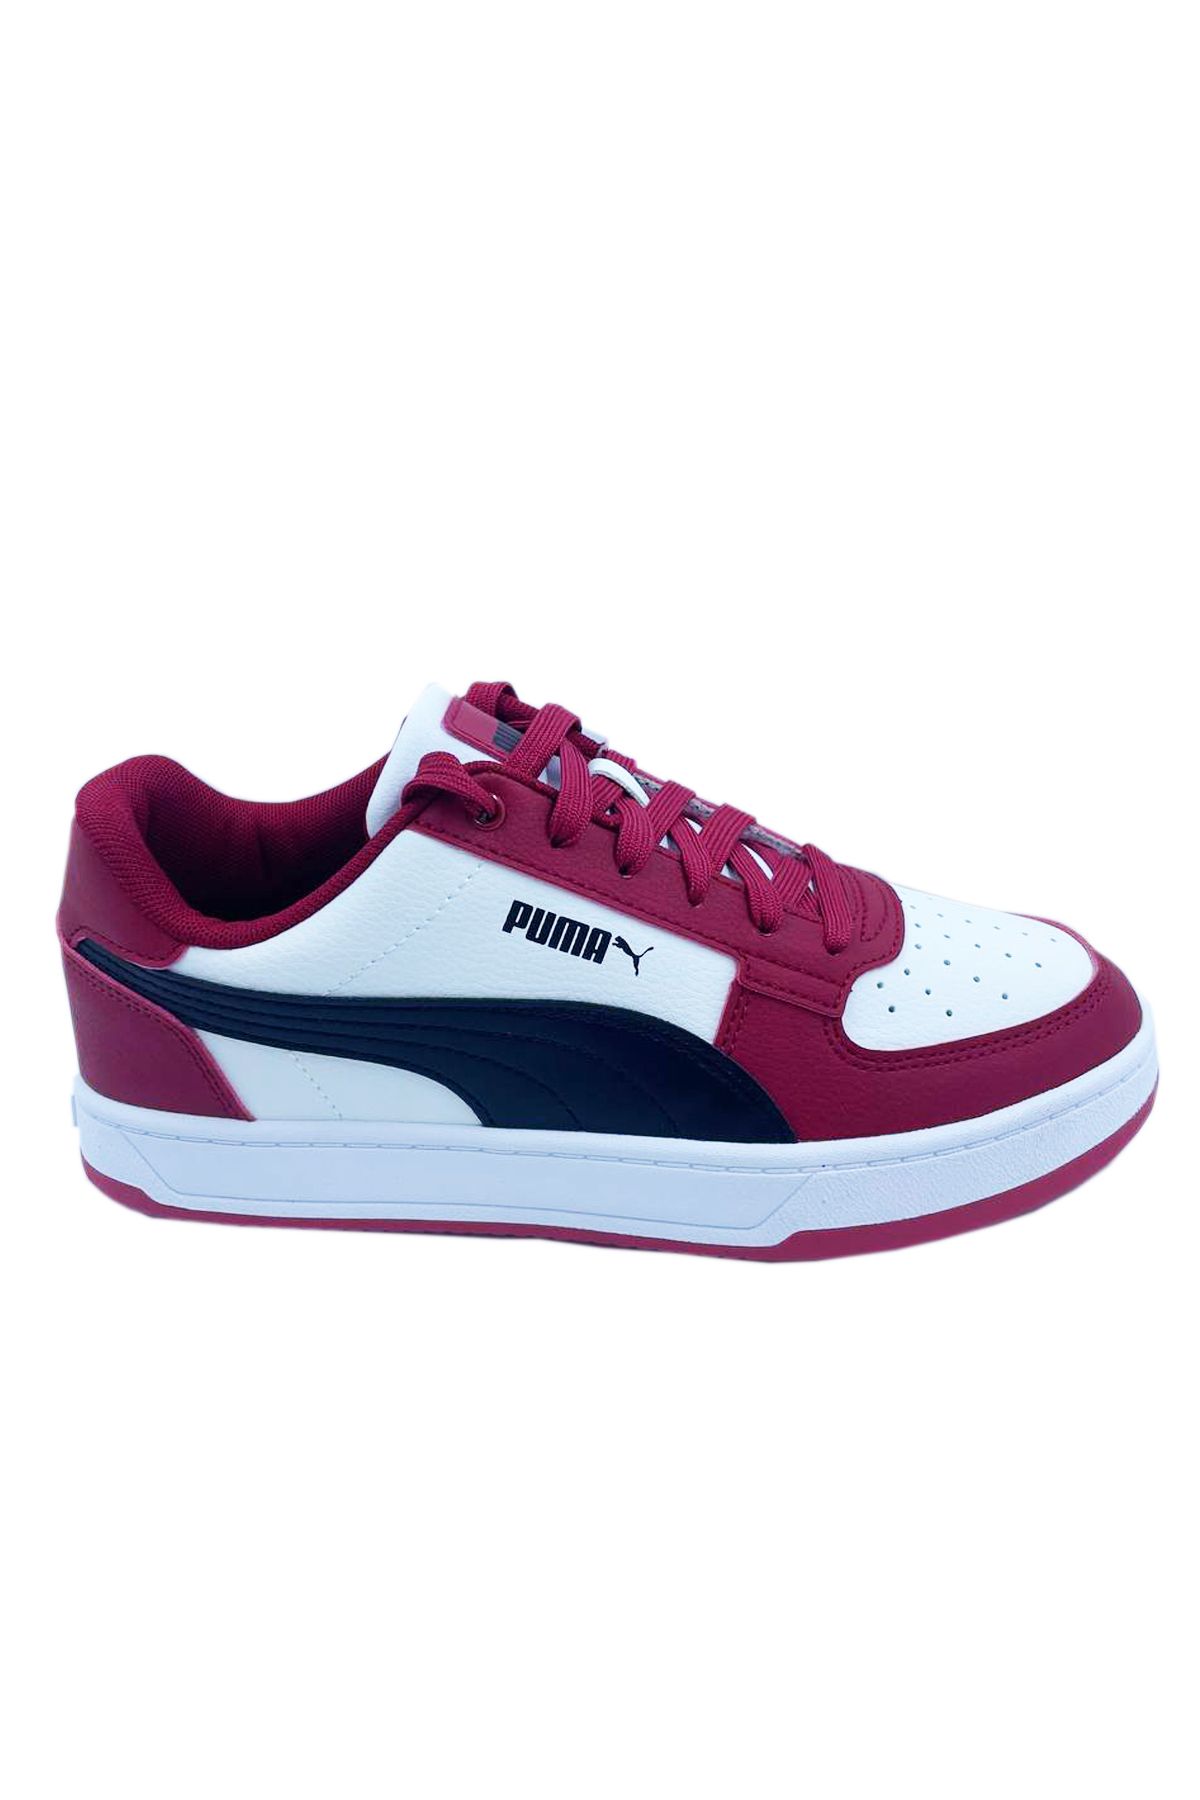 Puma Caven 2.0 Unisex Sneaker Ayakkabı 392290-22 Çok Renkli